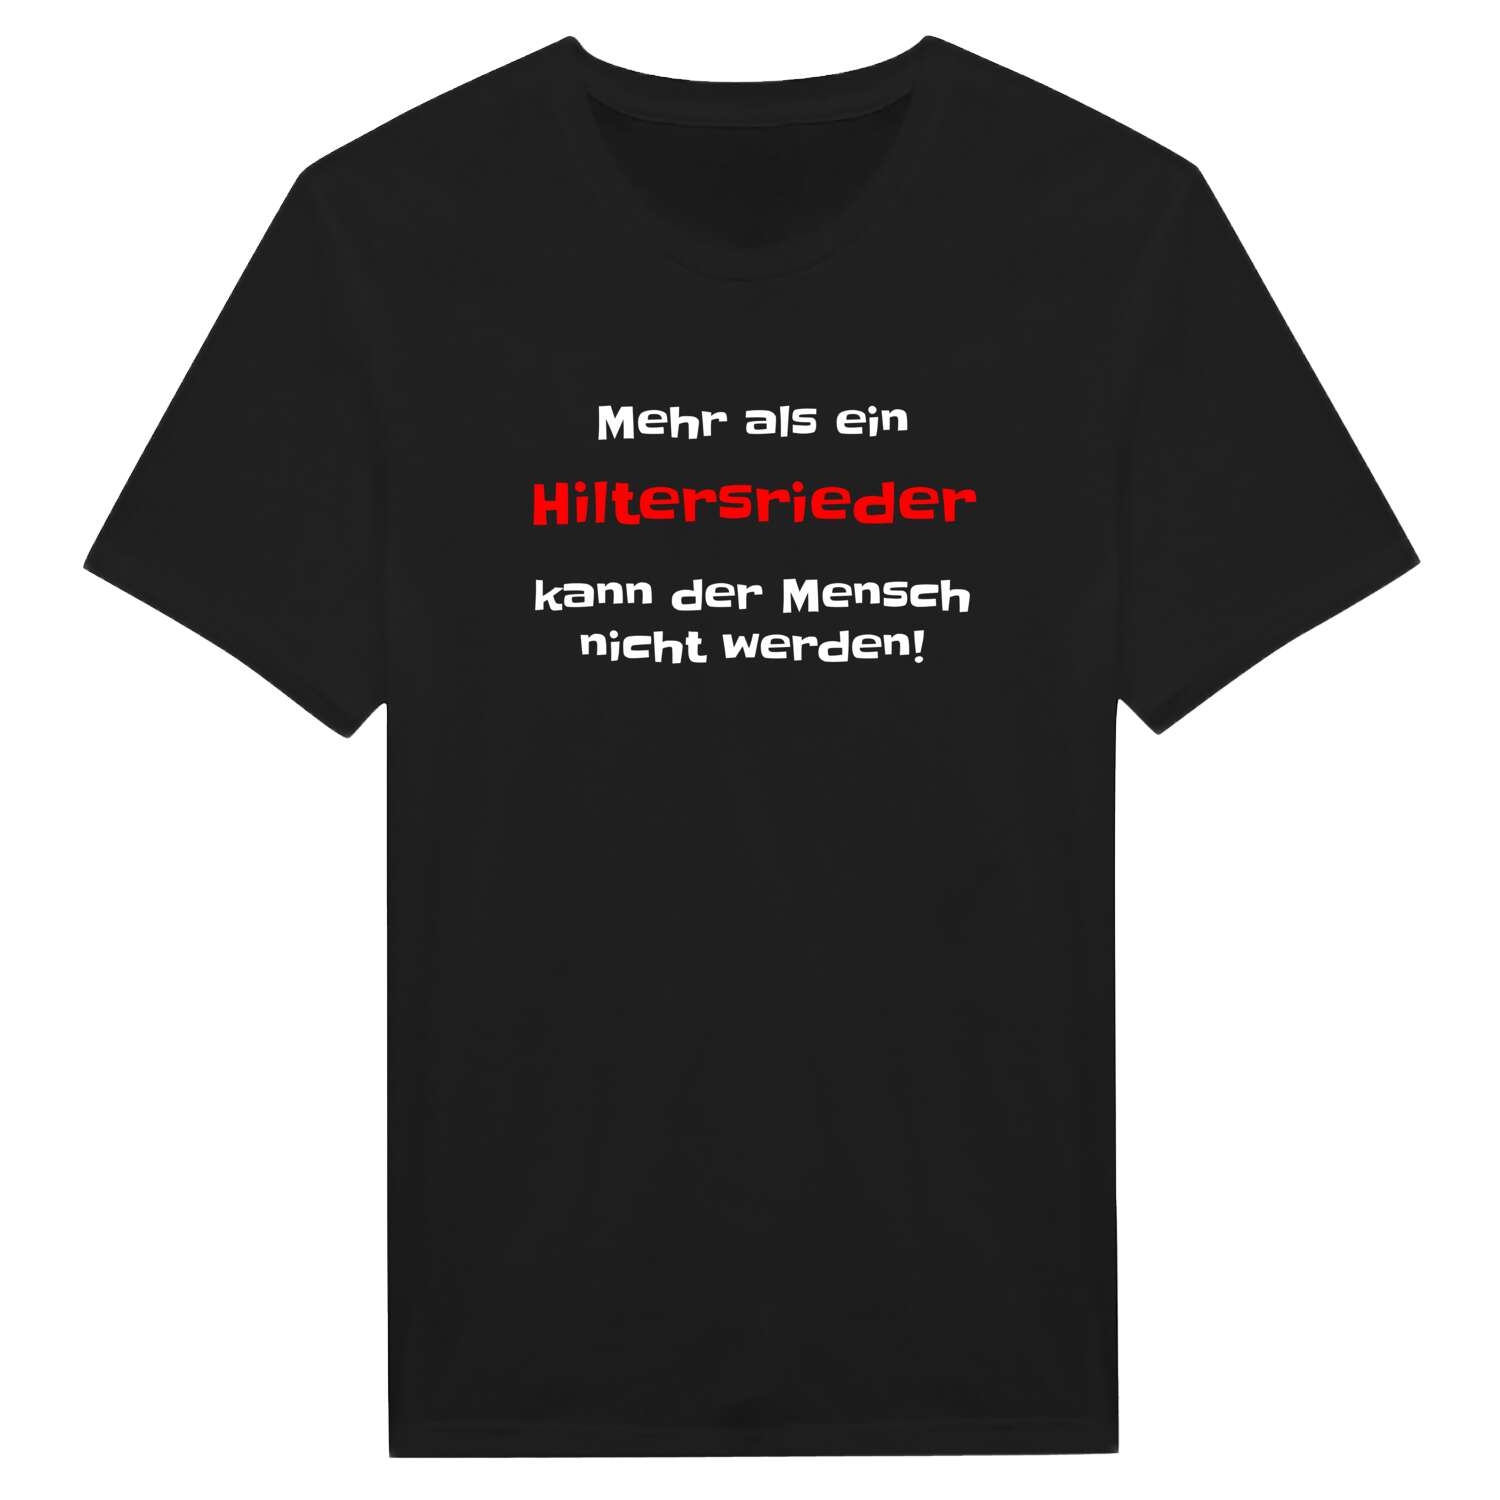 Hiltersried T-Shirt »Mehr als ein«